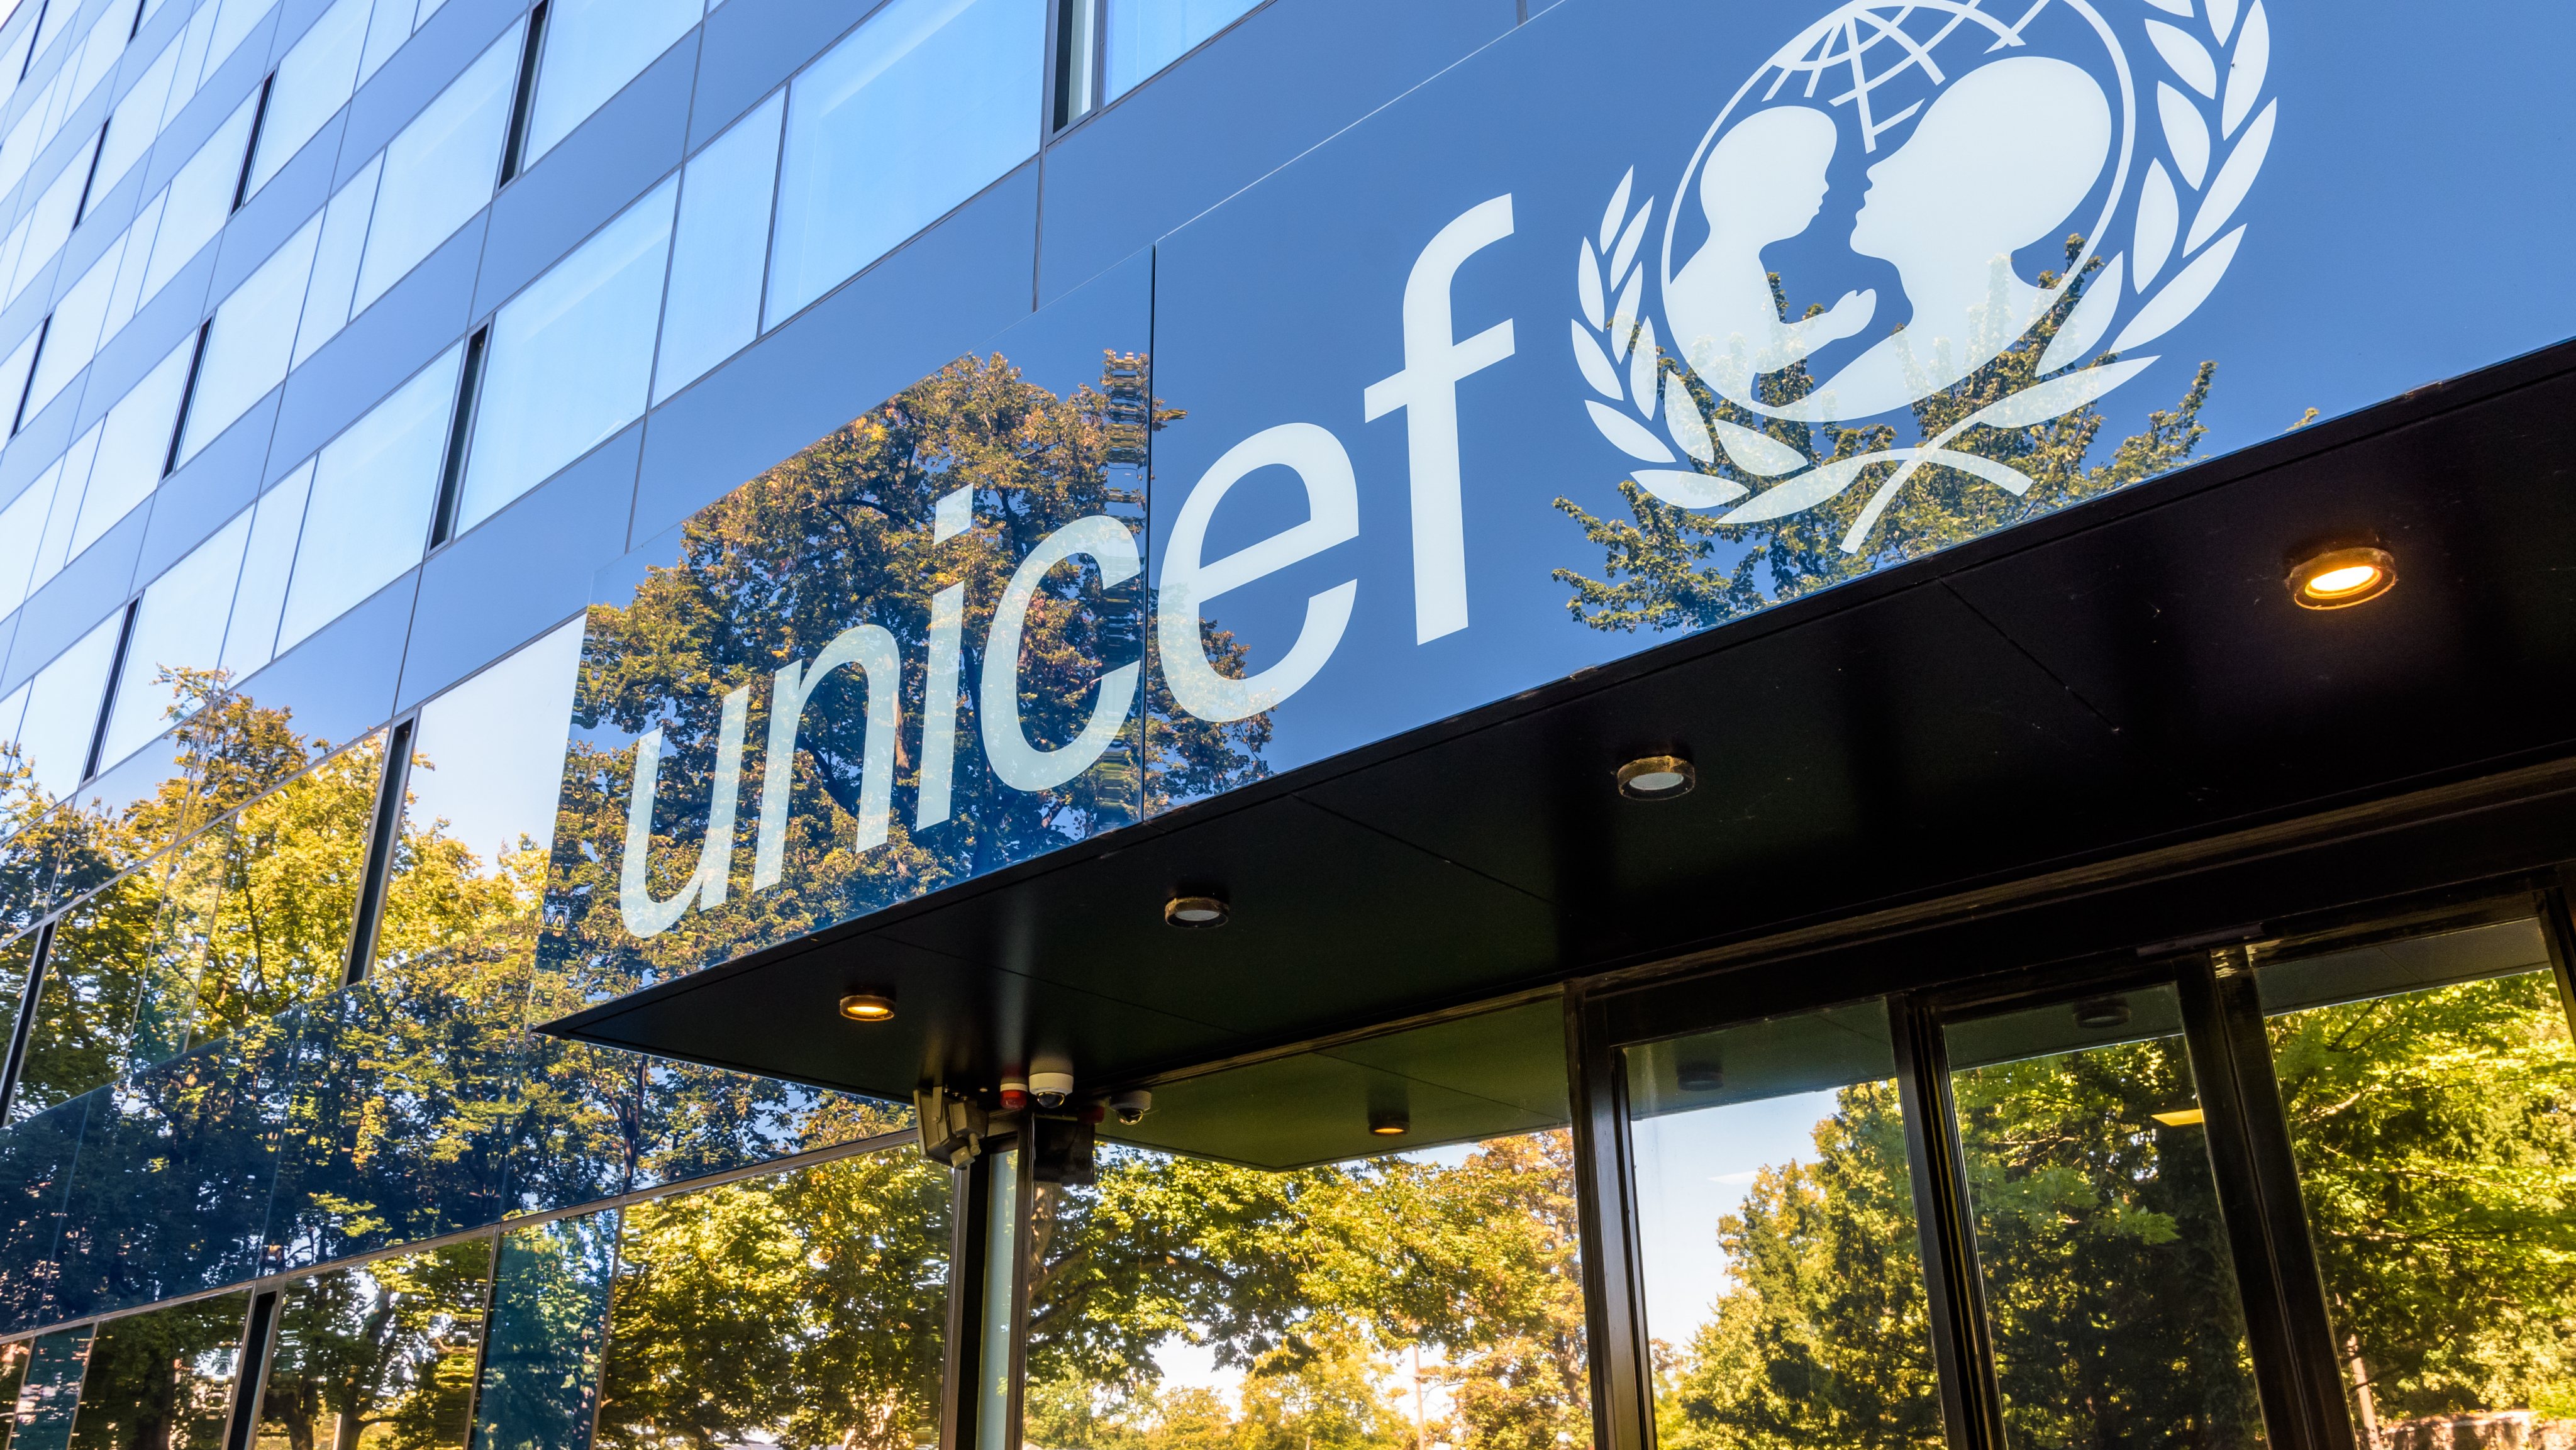 Sede da Unicef em Genebra